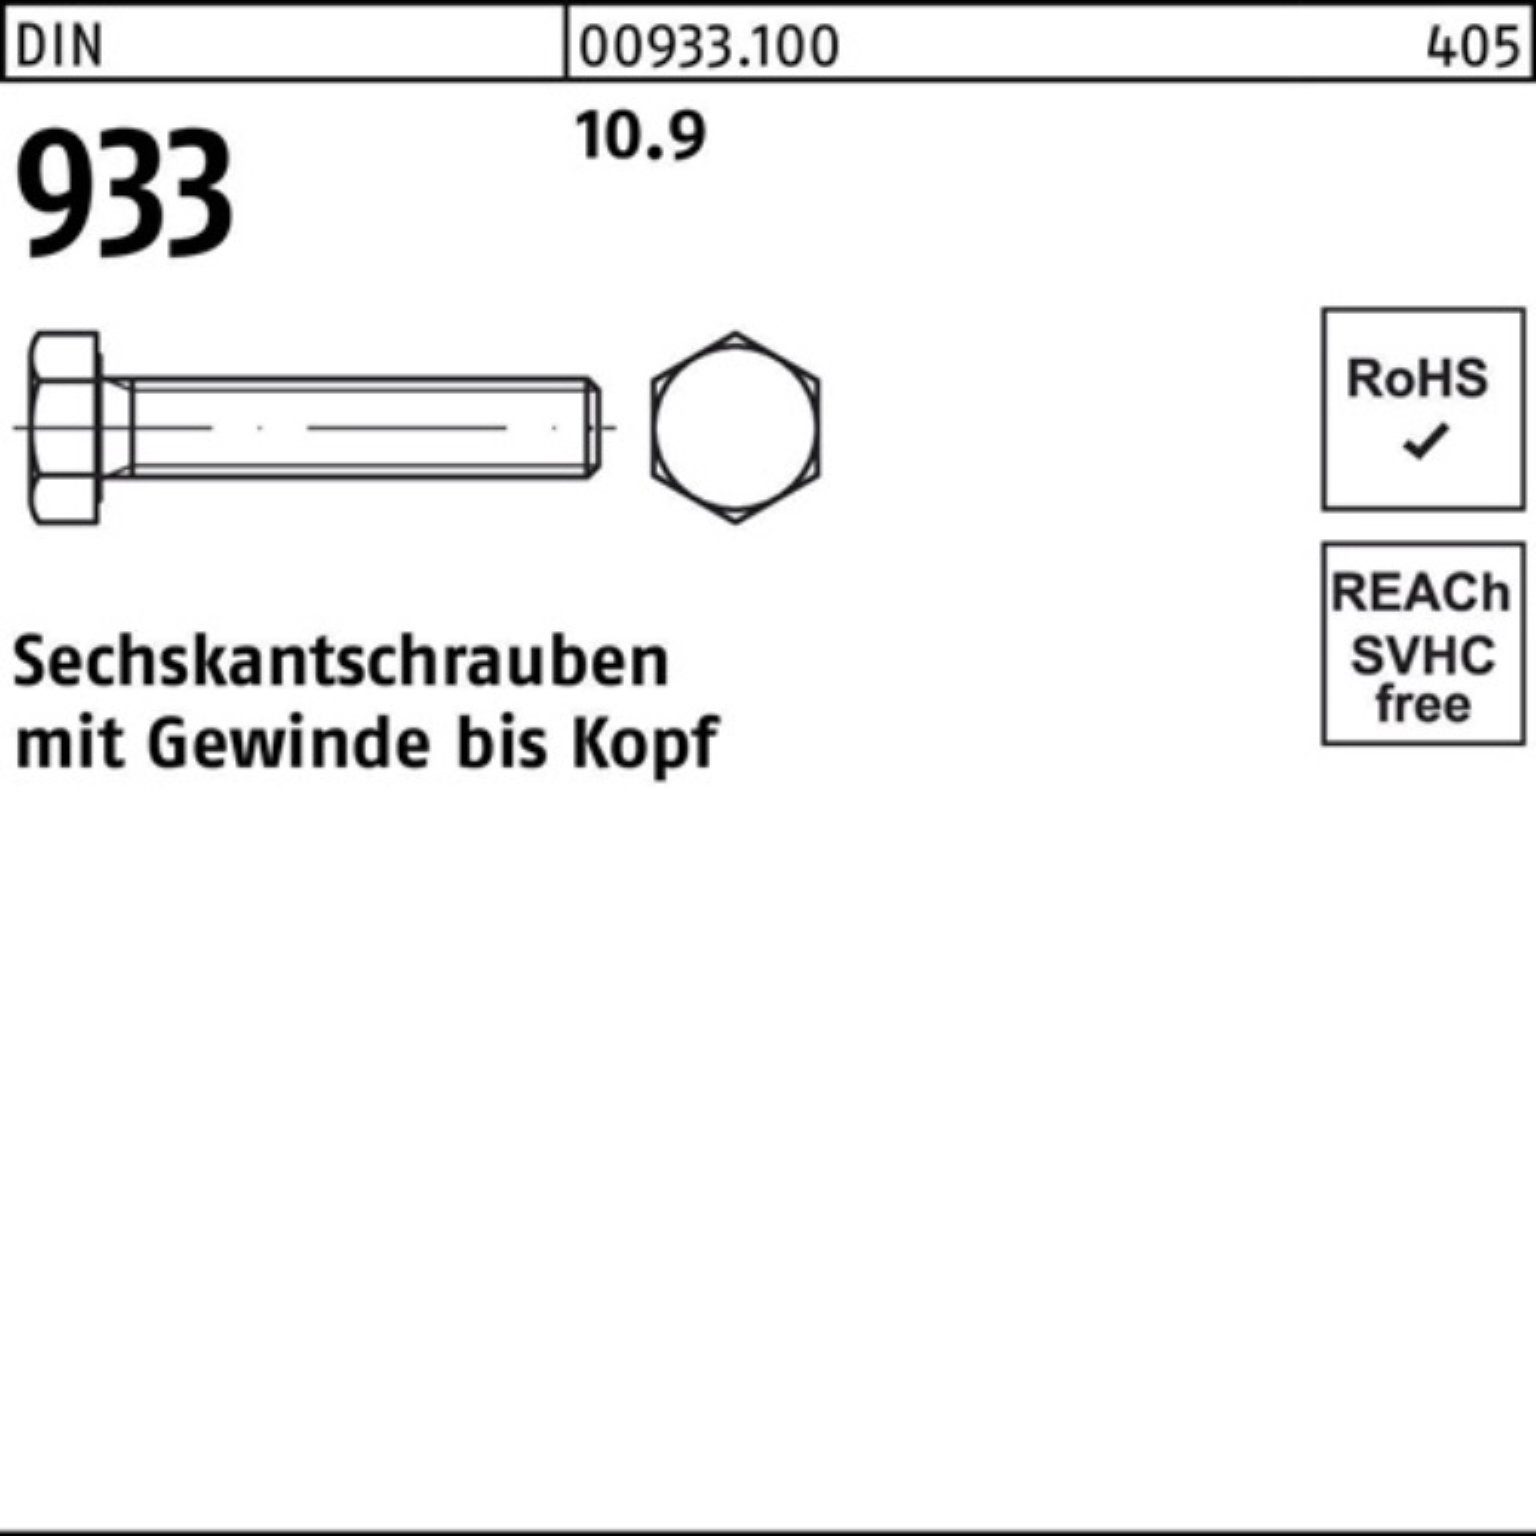 M18x Sechskantschraube DIN Reyher 100er VG Sechskantschraube Pack 10.9 933 Stück DIN 933 75 25